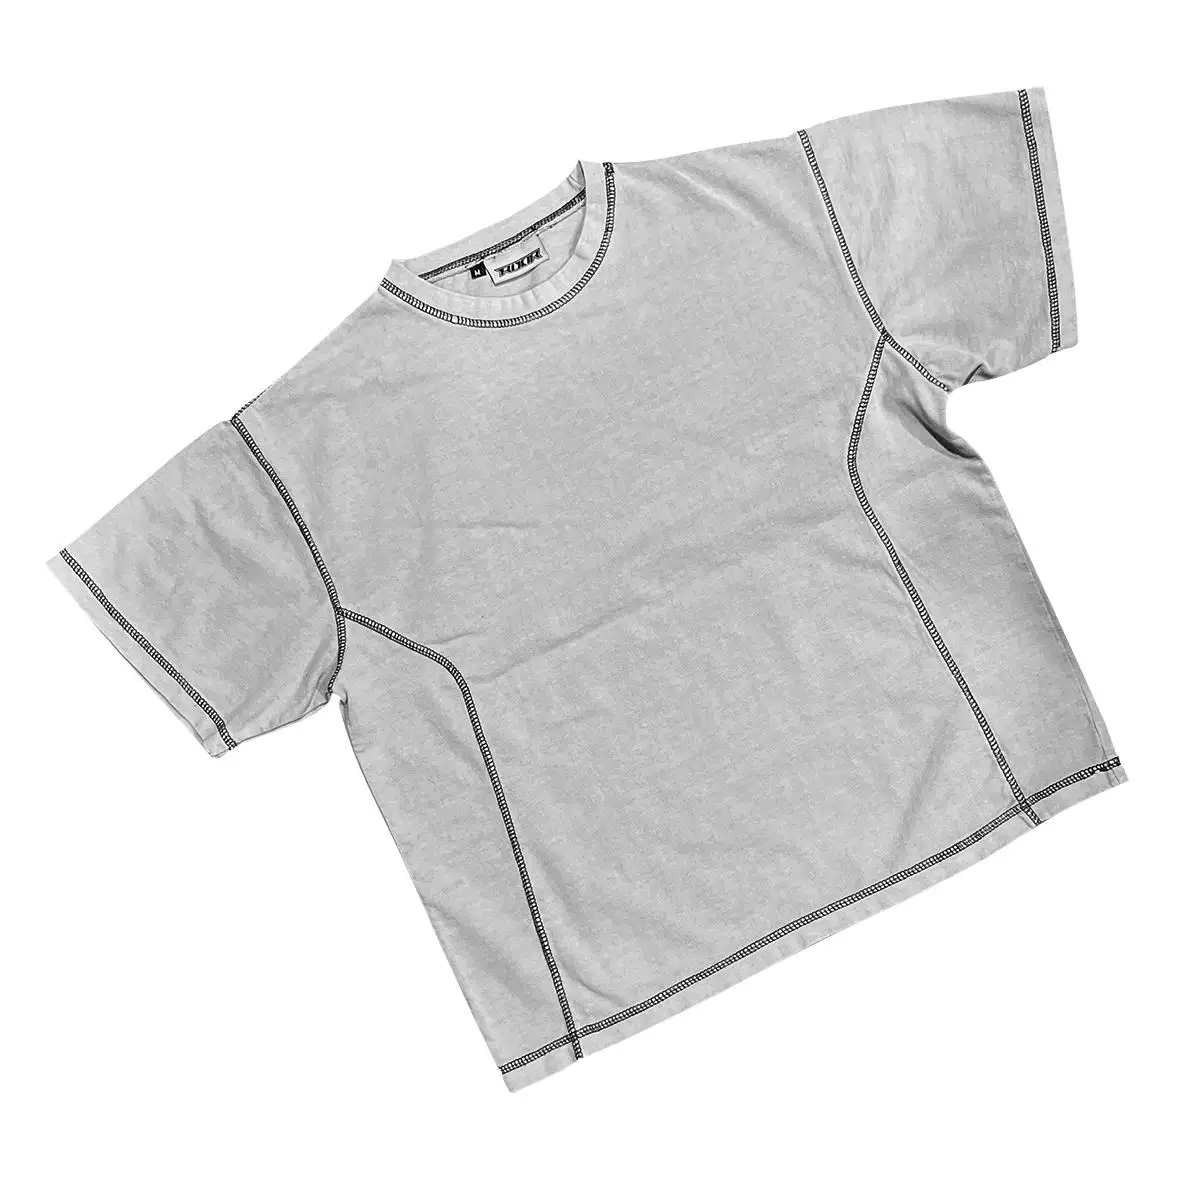 नया विकास शीर्ष गुणवत्ता वाले थोक एसिड धुलाई ओवरसाइज टीशर्ट 280gsm विंटेज ओवरसाइज टी शर्ट